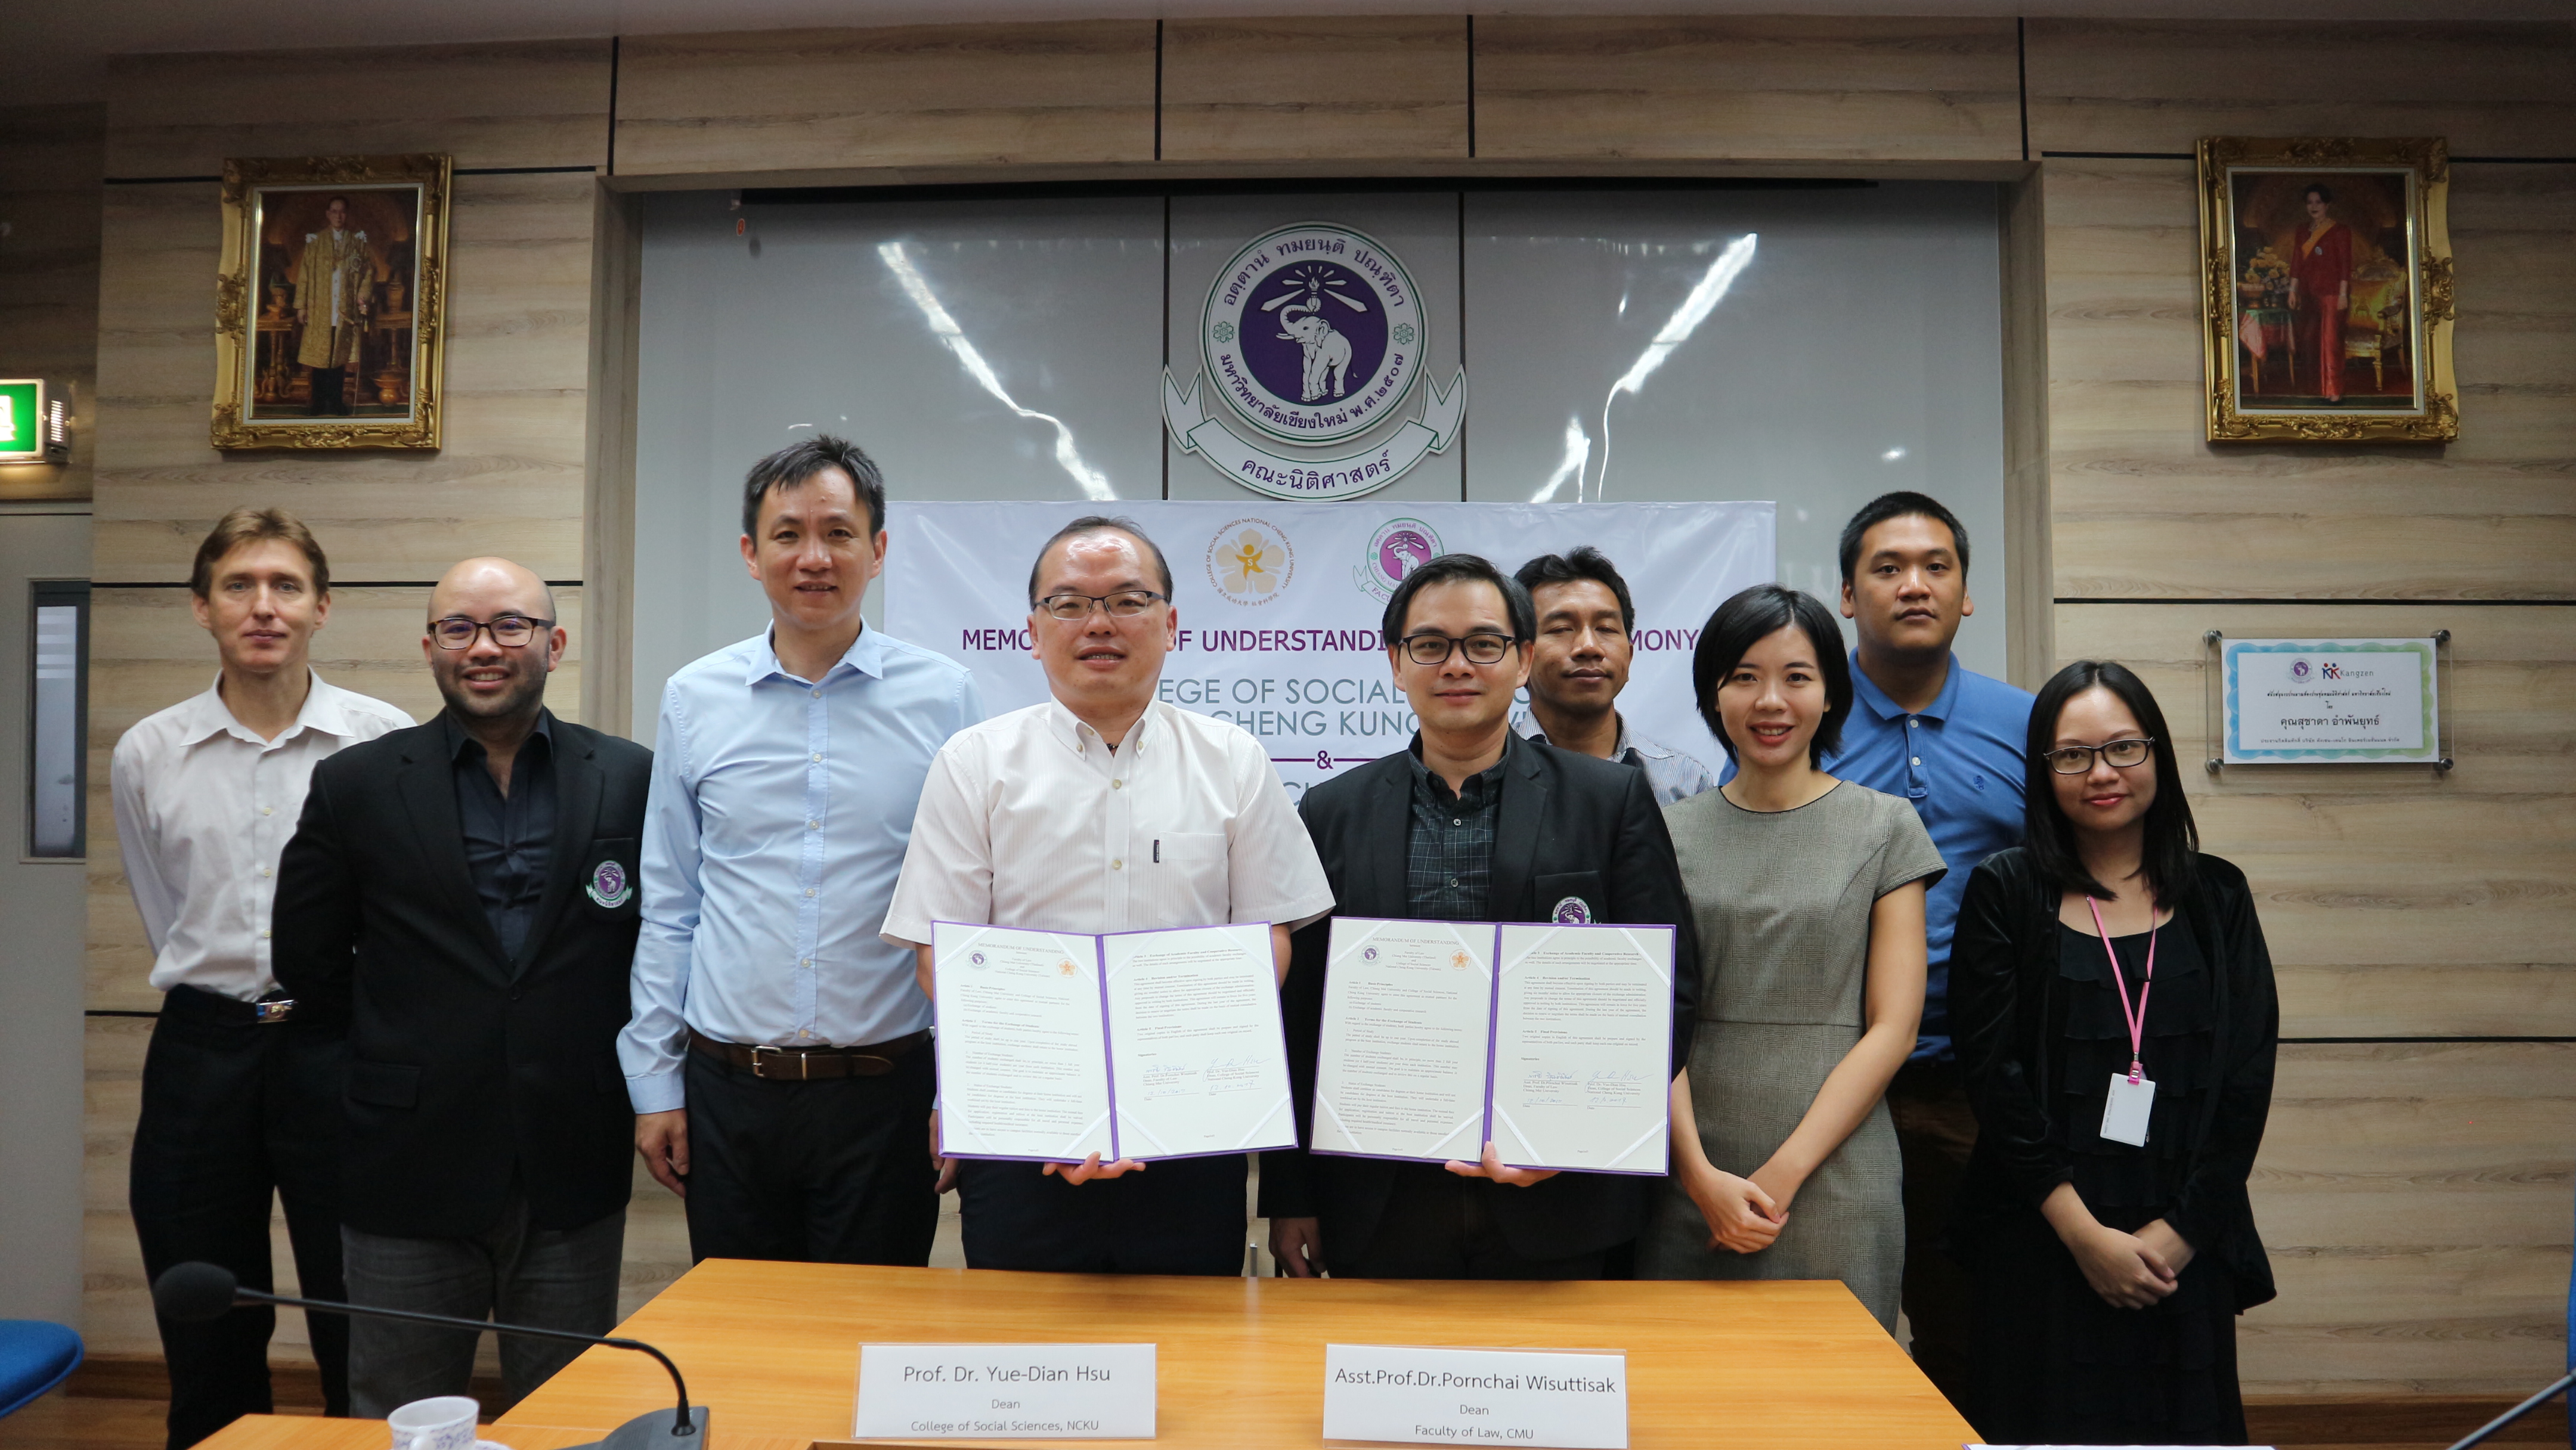 พิธีลงนามบันทึกข้อตกลงความร่วมมือทางวิชาการ ระหว่างคณะนิติศาสตร์ มหาวิทยาลัยเชียงใหม่ และ College of Social Sciences, National Cheng Kung University (